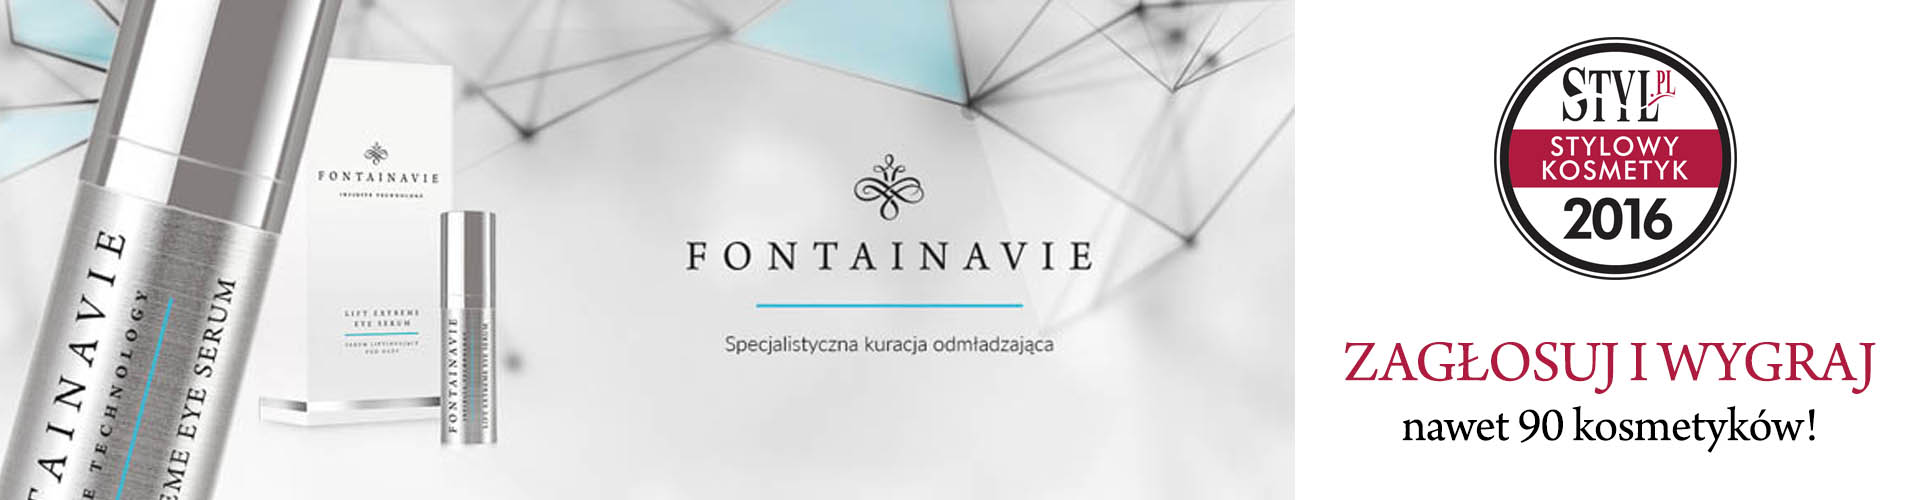 Zagłosuj na nasze serum Fontainavie w plebiscycie 